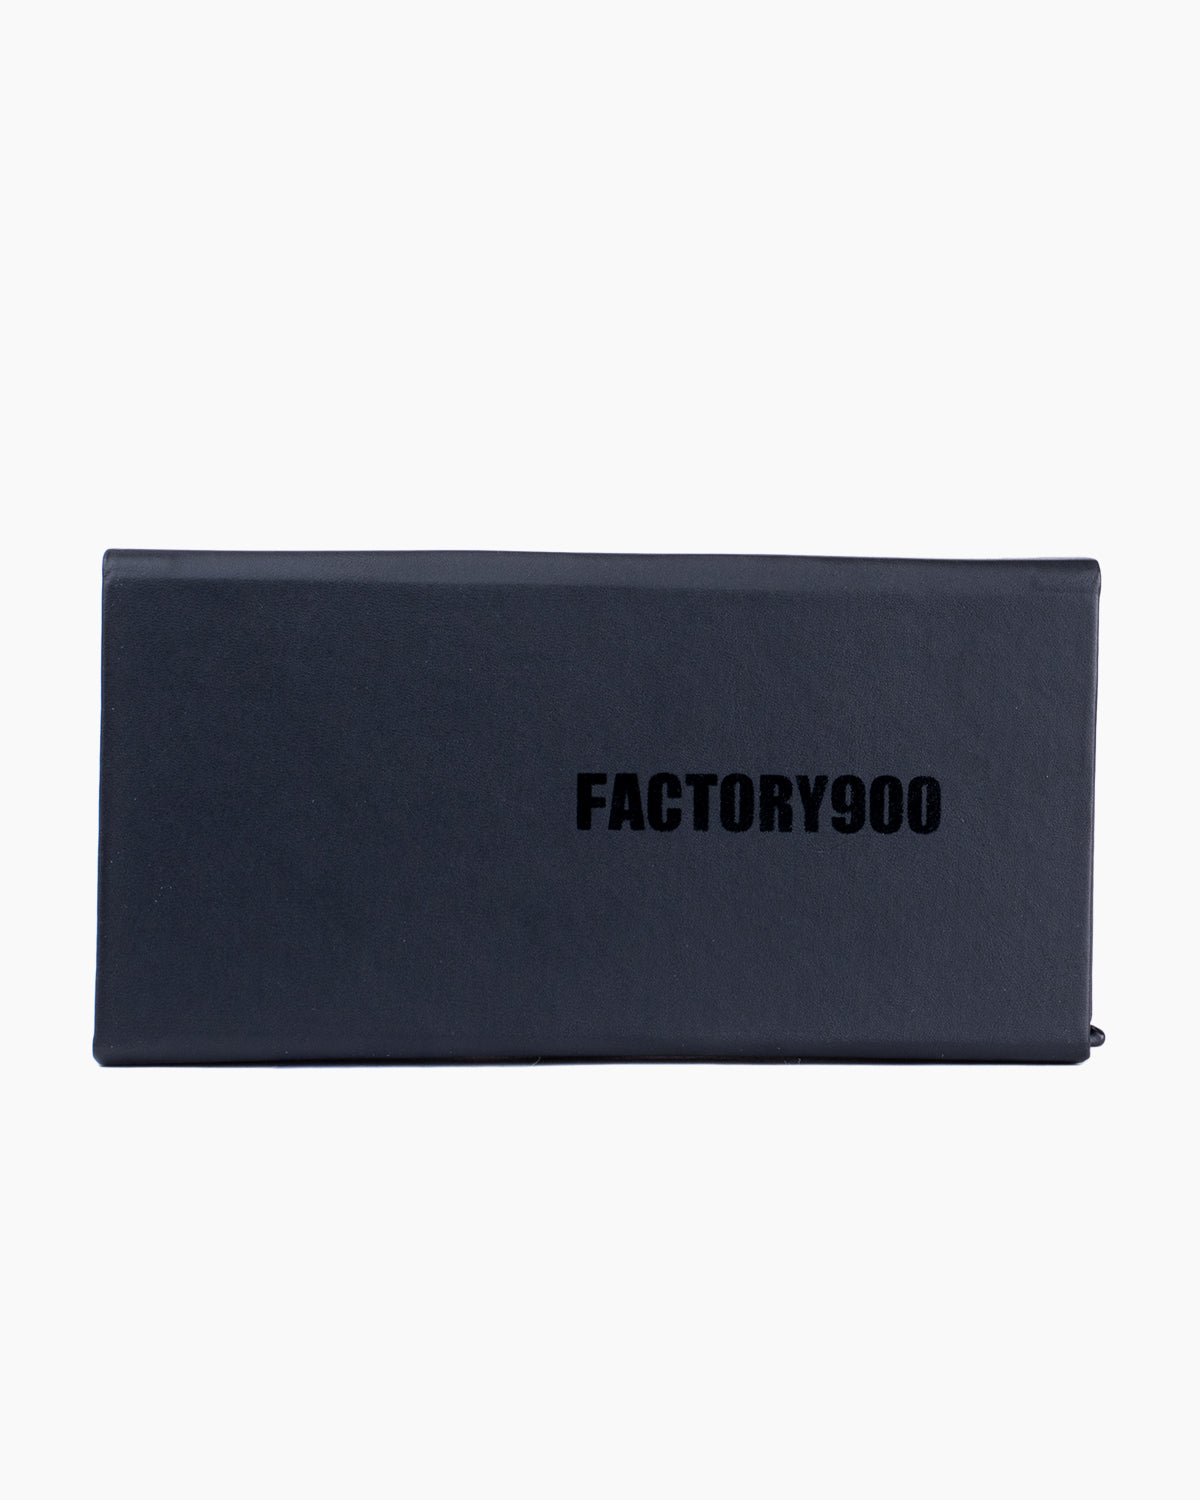 Factory 900 - MF001 - 02 | glasses bar